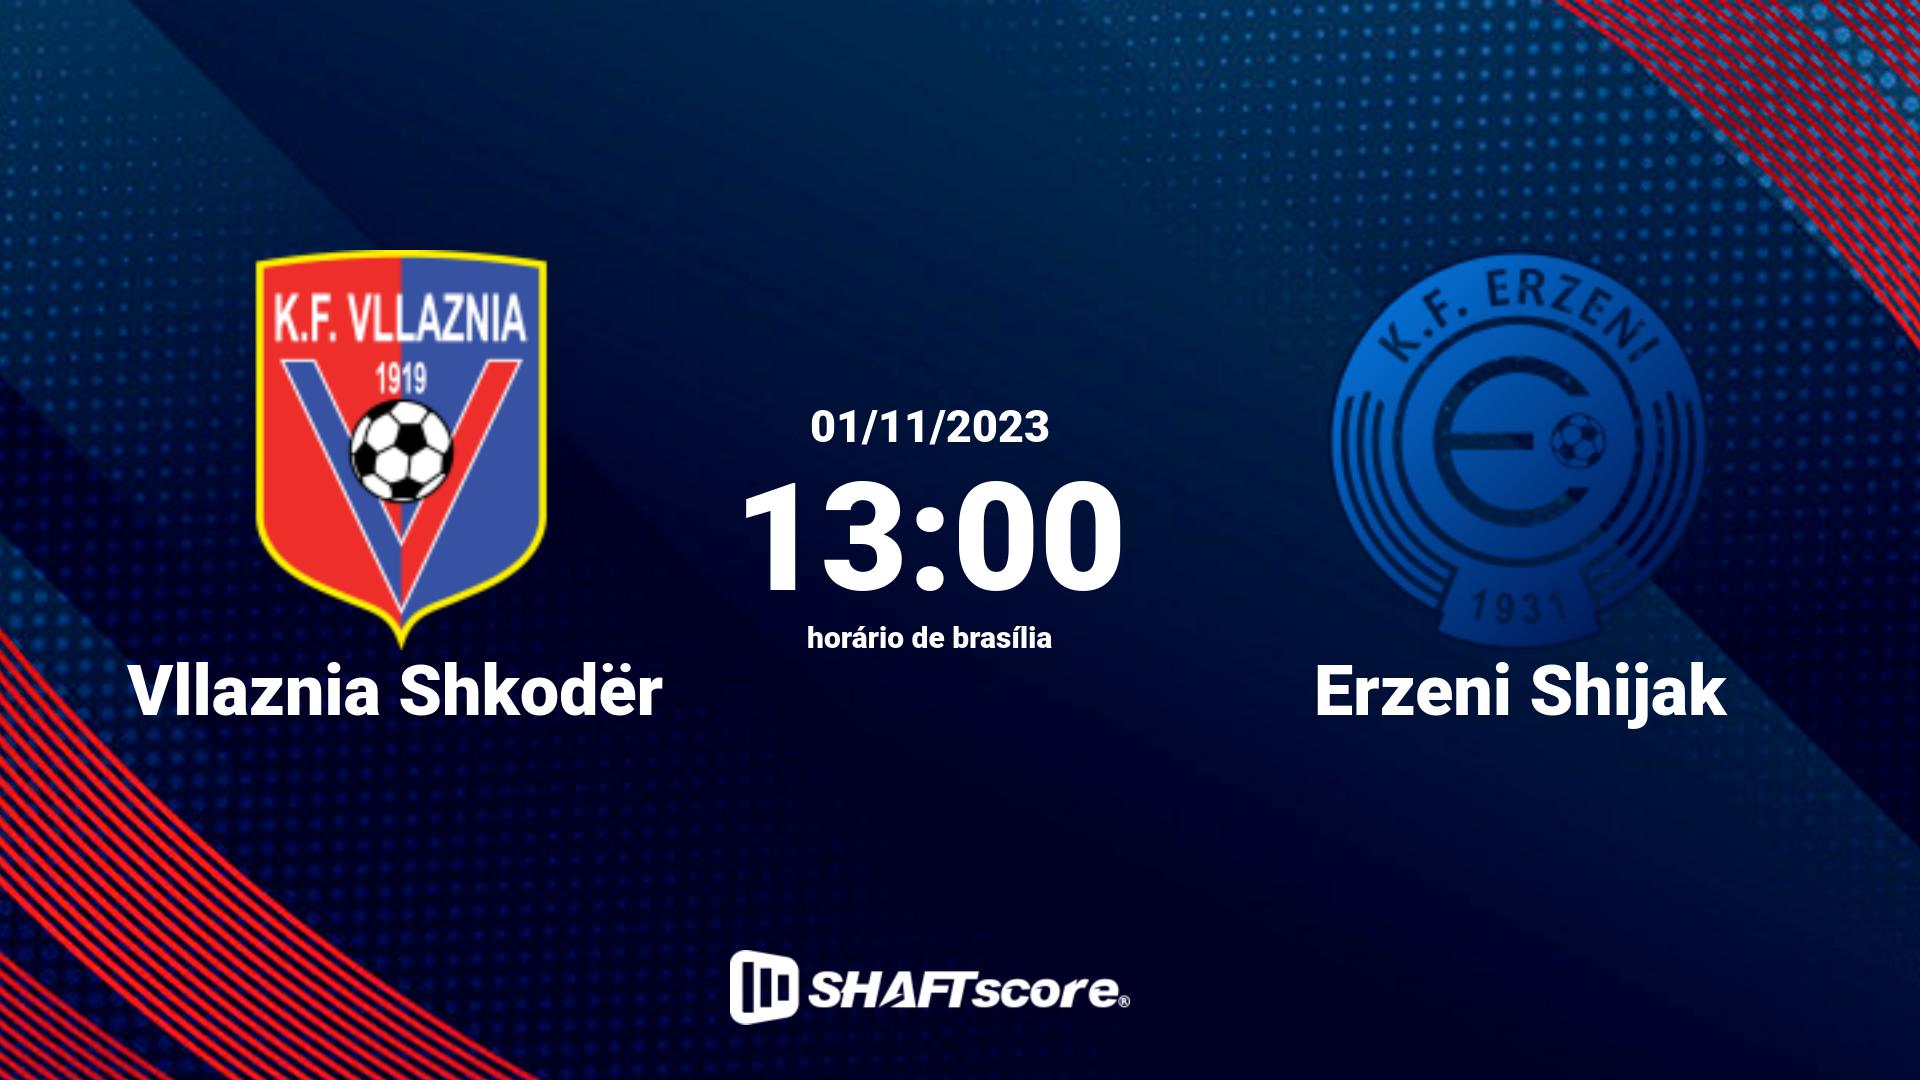 Estatísticas do jogo Vllaznia Shkodër vs Erzeni Shijak 01.11 13:00